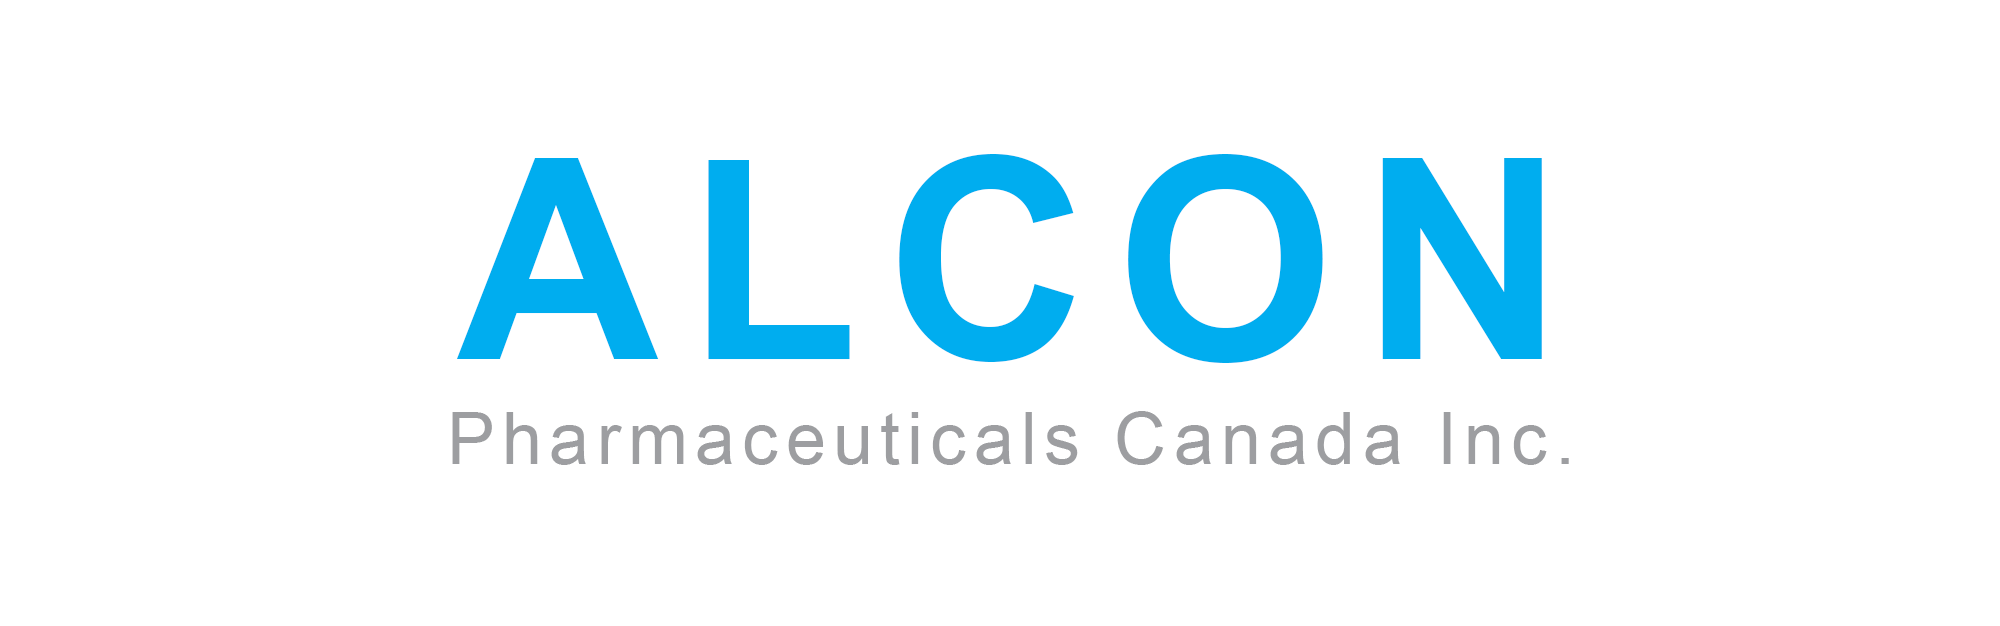 Alcon Pharmaceuticals Canada Inc